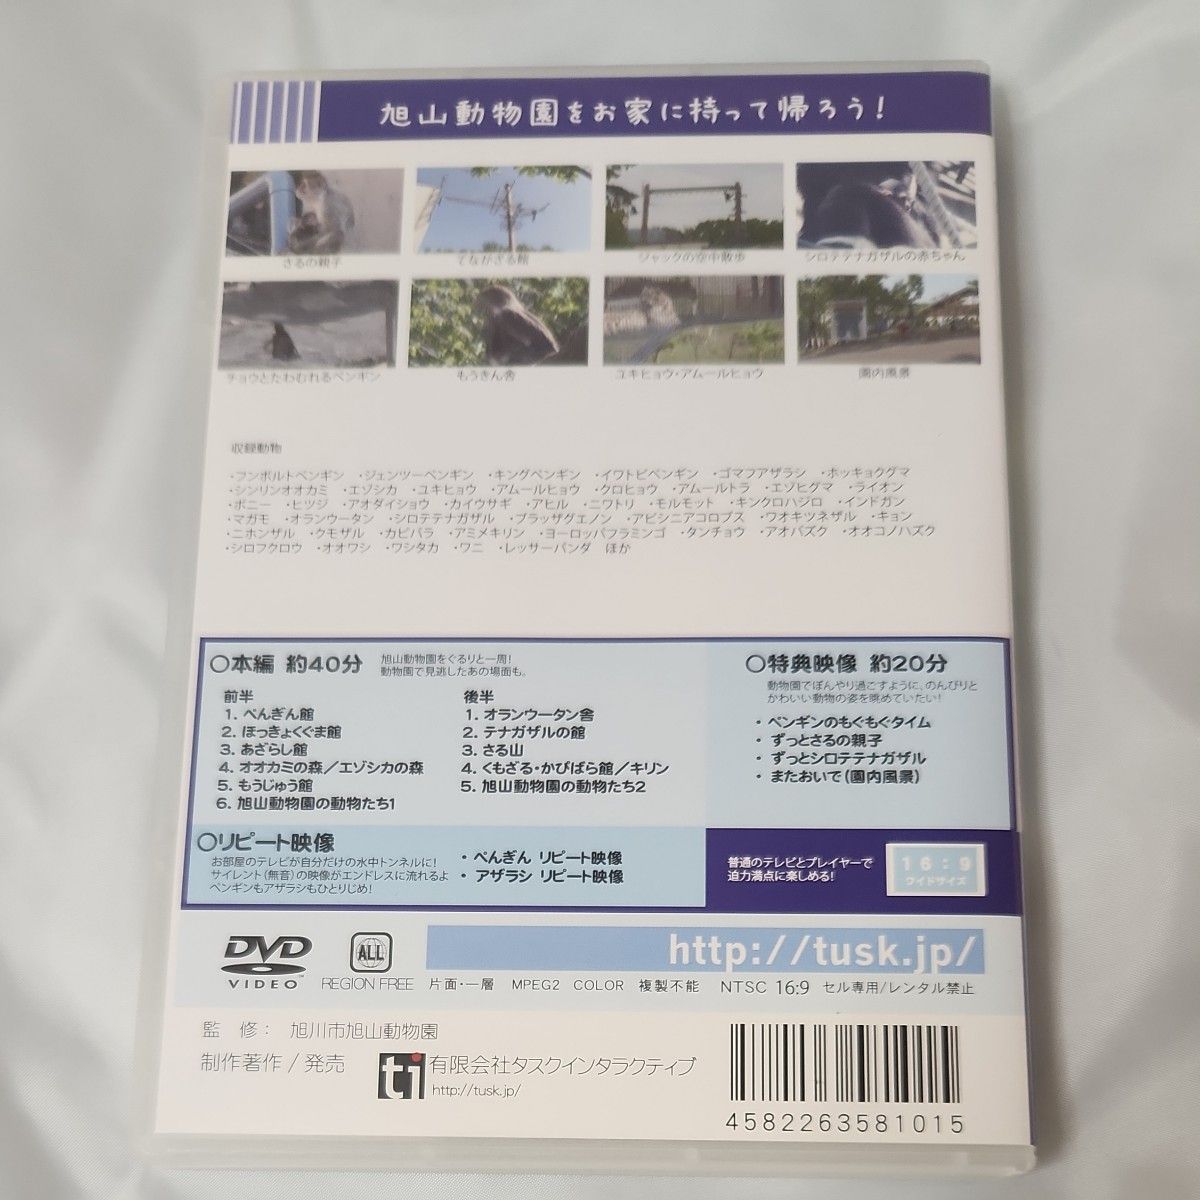 旭山動物園に行ってきました (DVD)